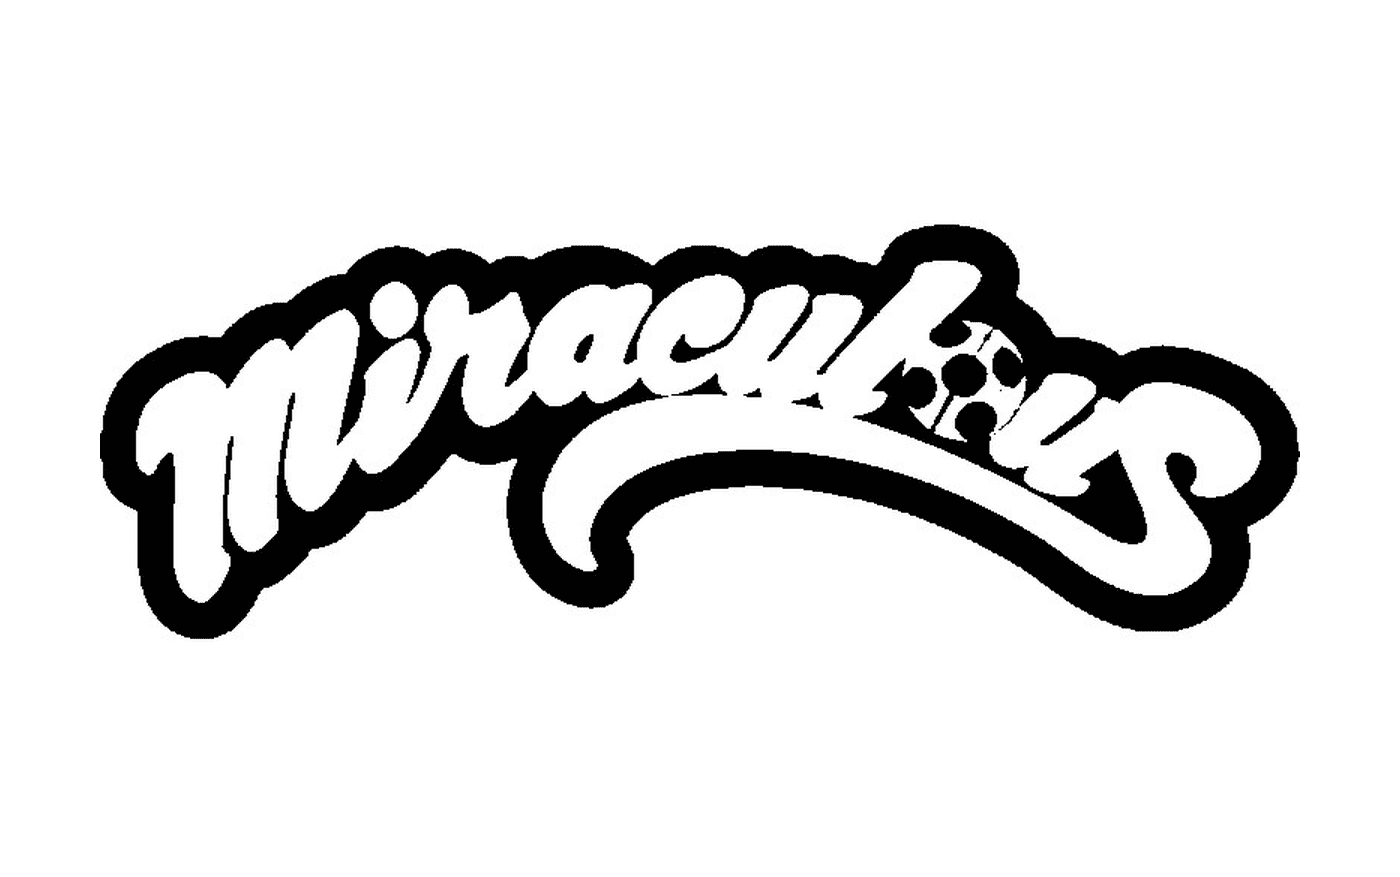  El logo de Mariquita Milagrosa 